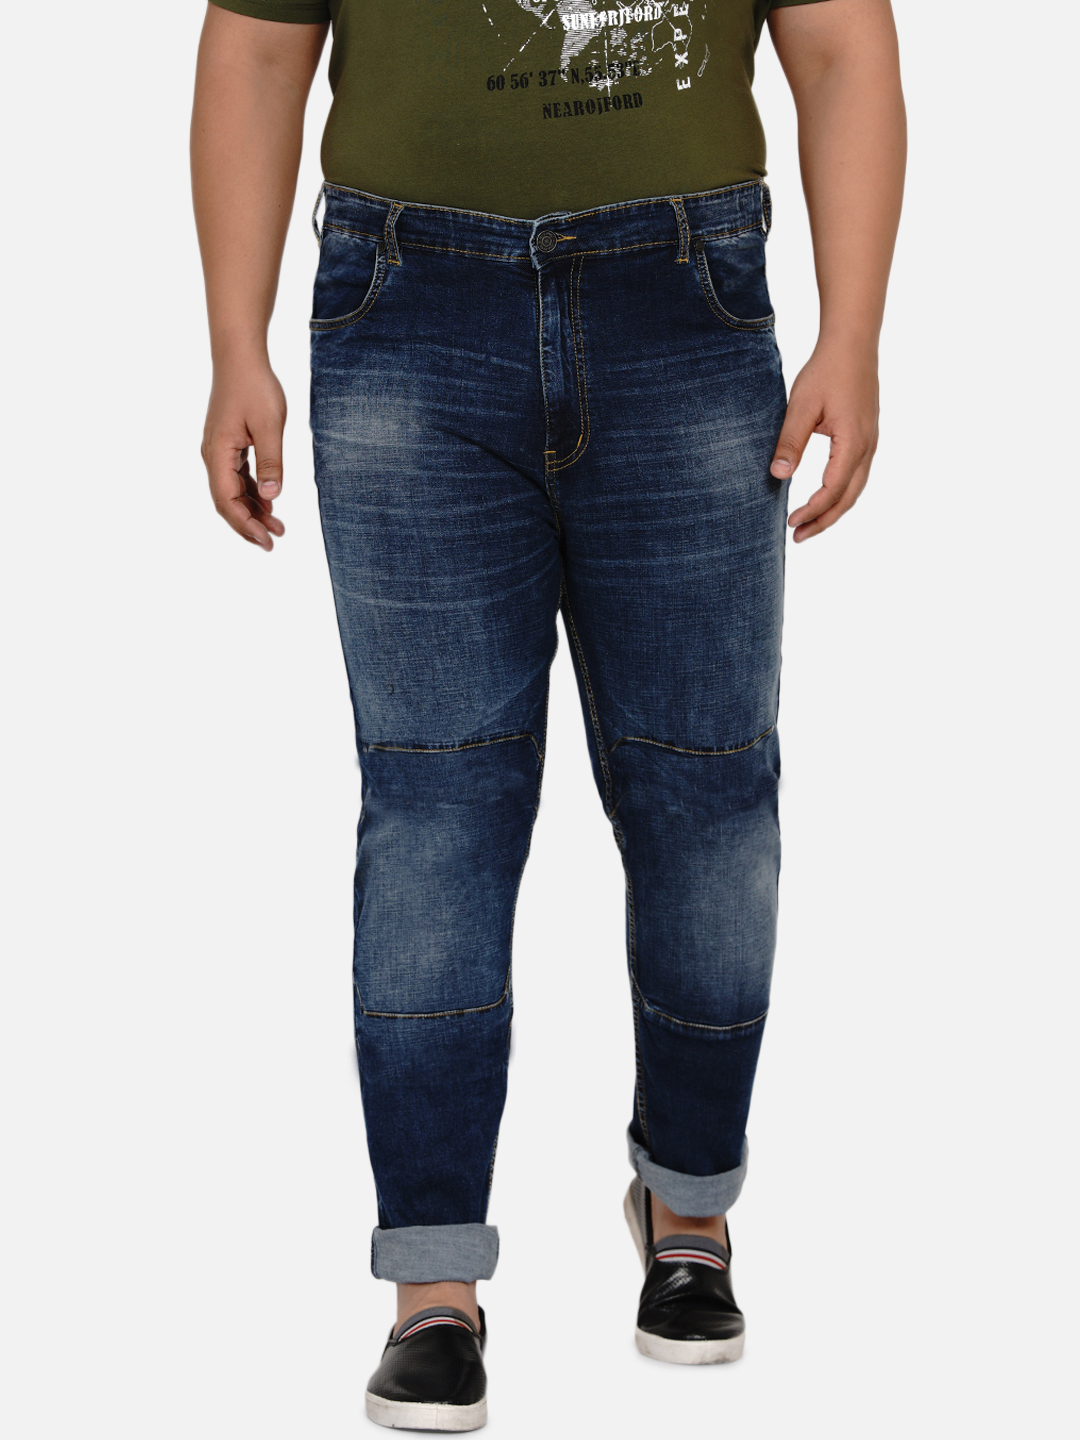 bottomwear/jeans/JPJ12186/jpj12186-6.jpg